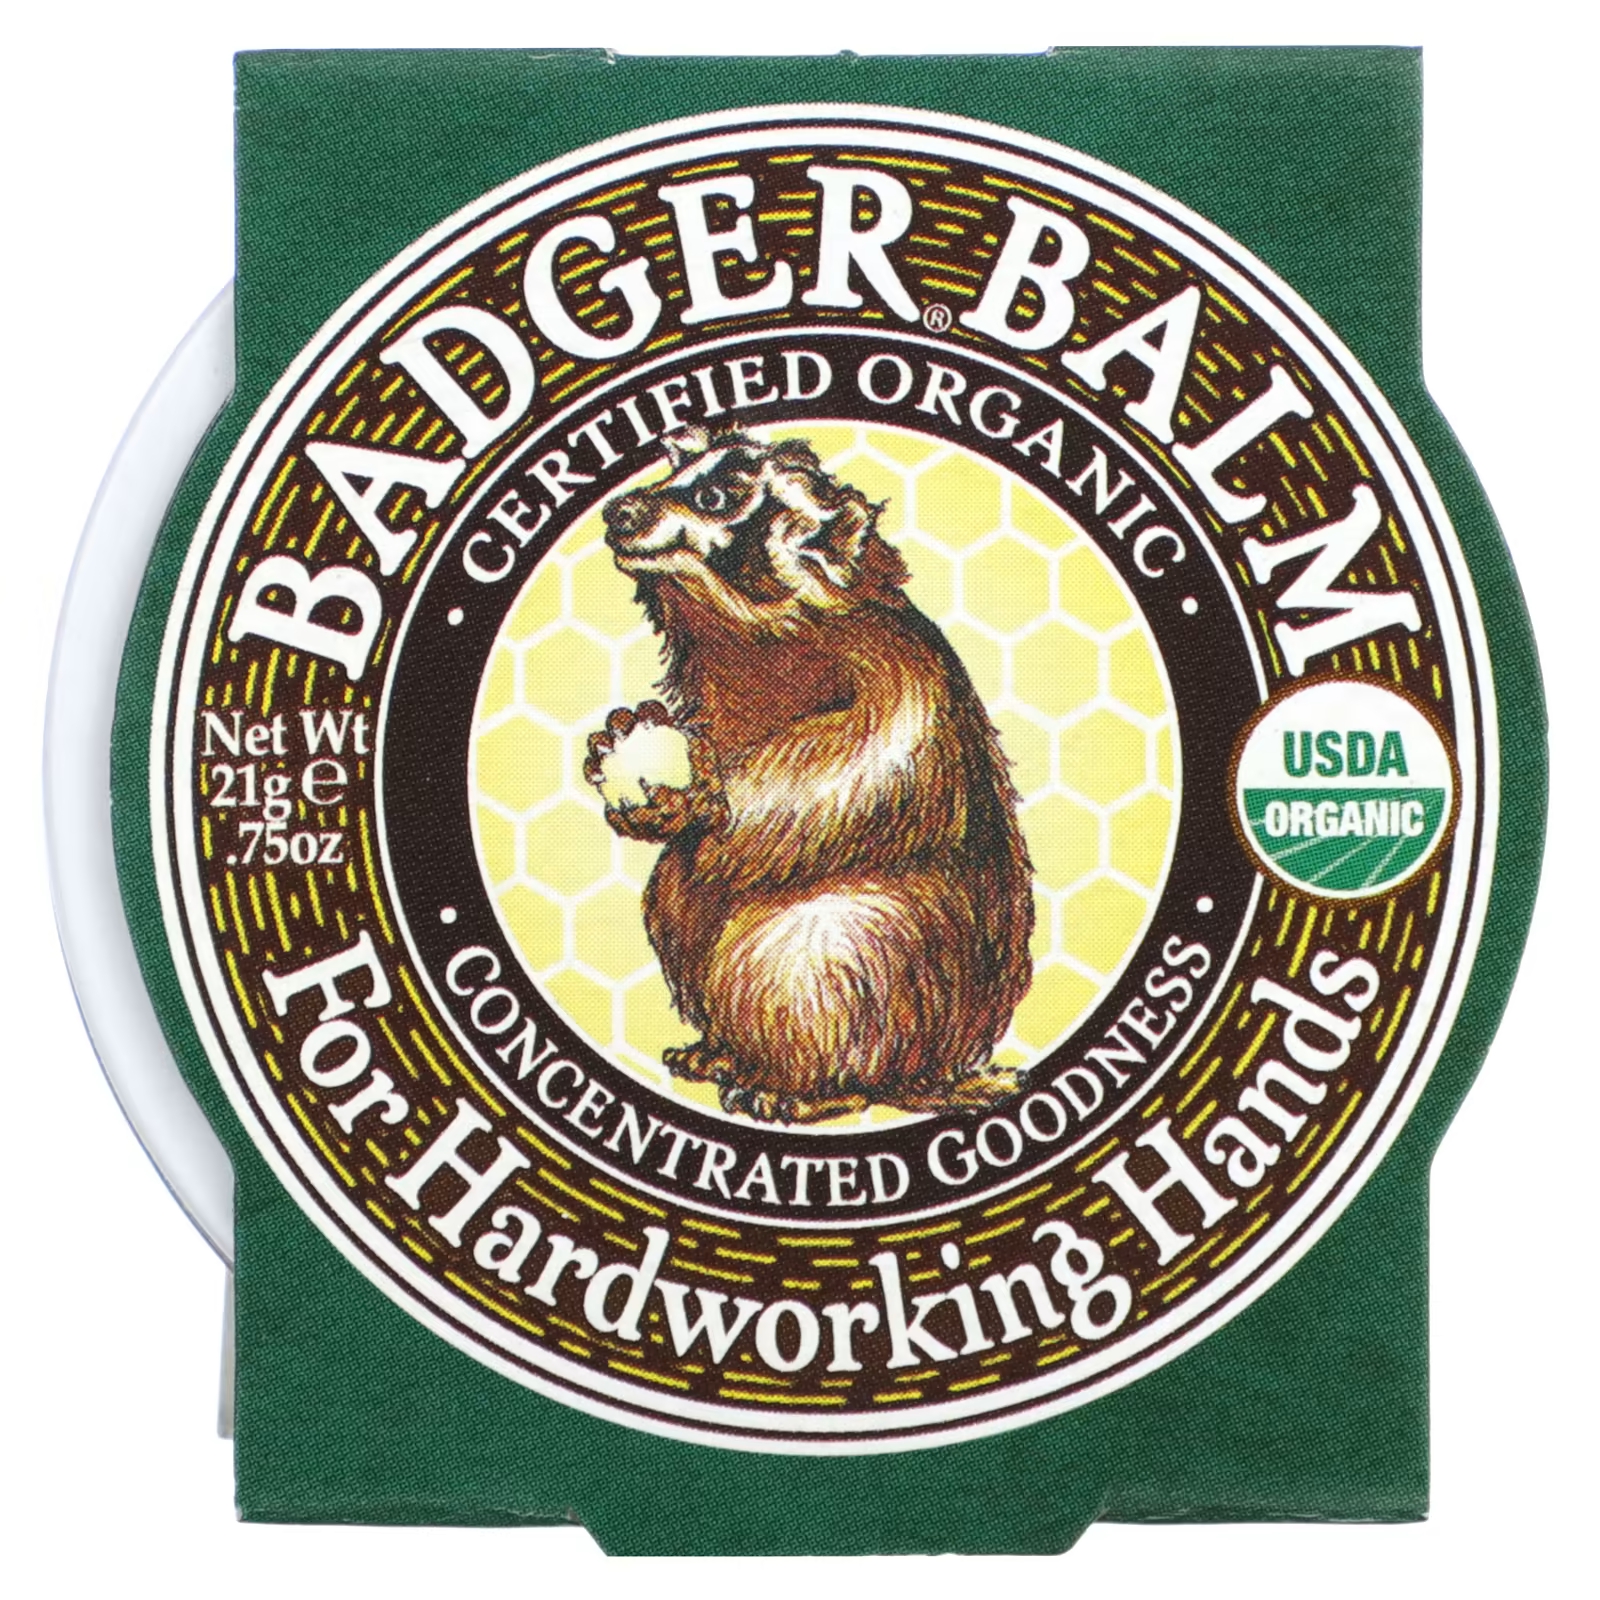 Органический бальзам Badger Company badger for hardworking hands, 21 гр. badger company badger бальзам для рабочих рук 75 унции 21 г